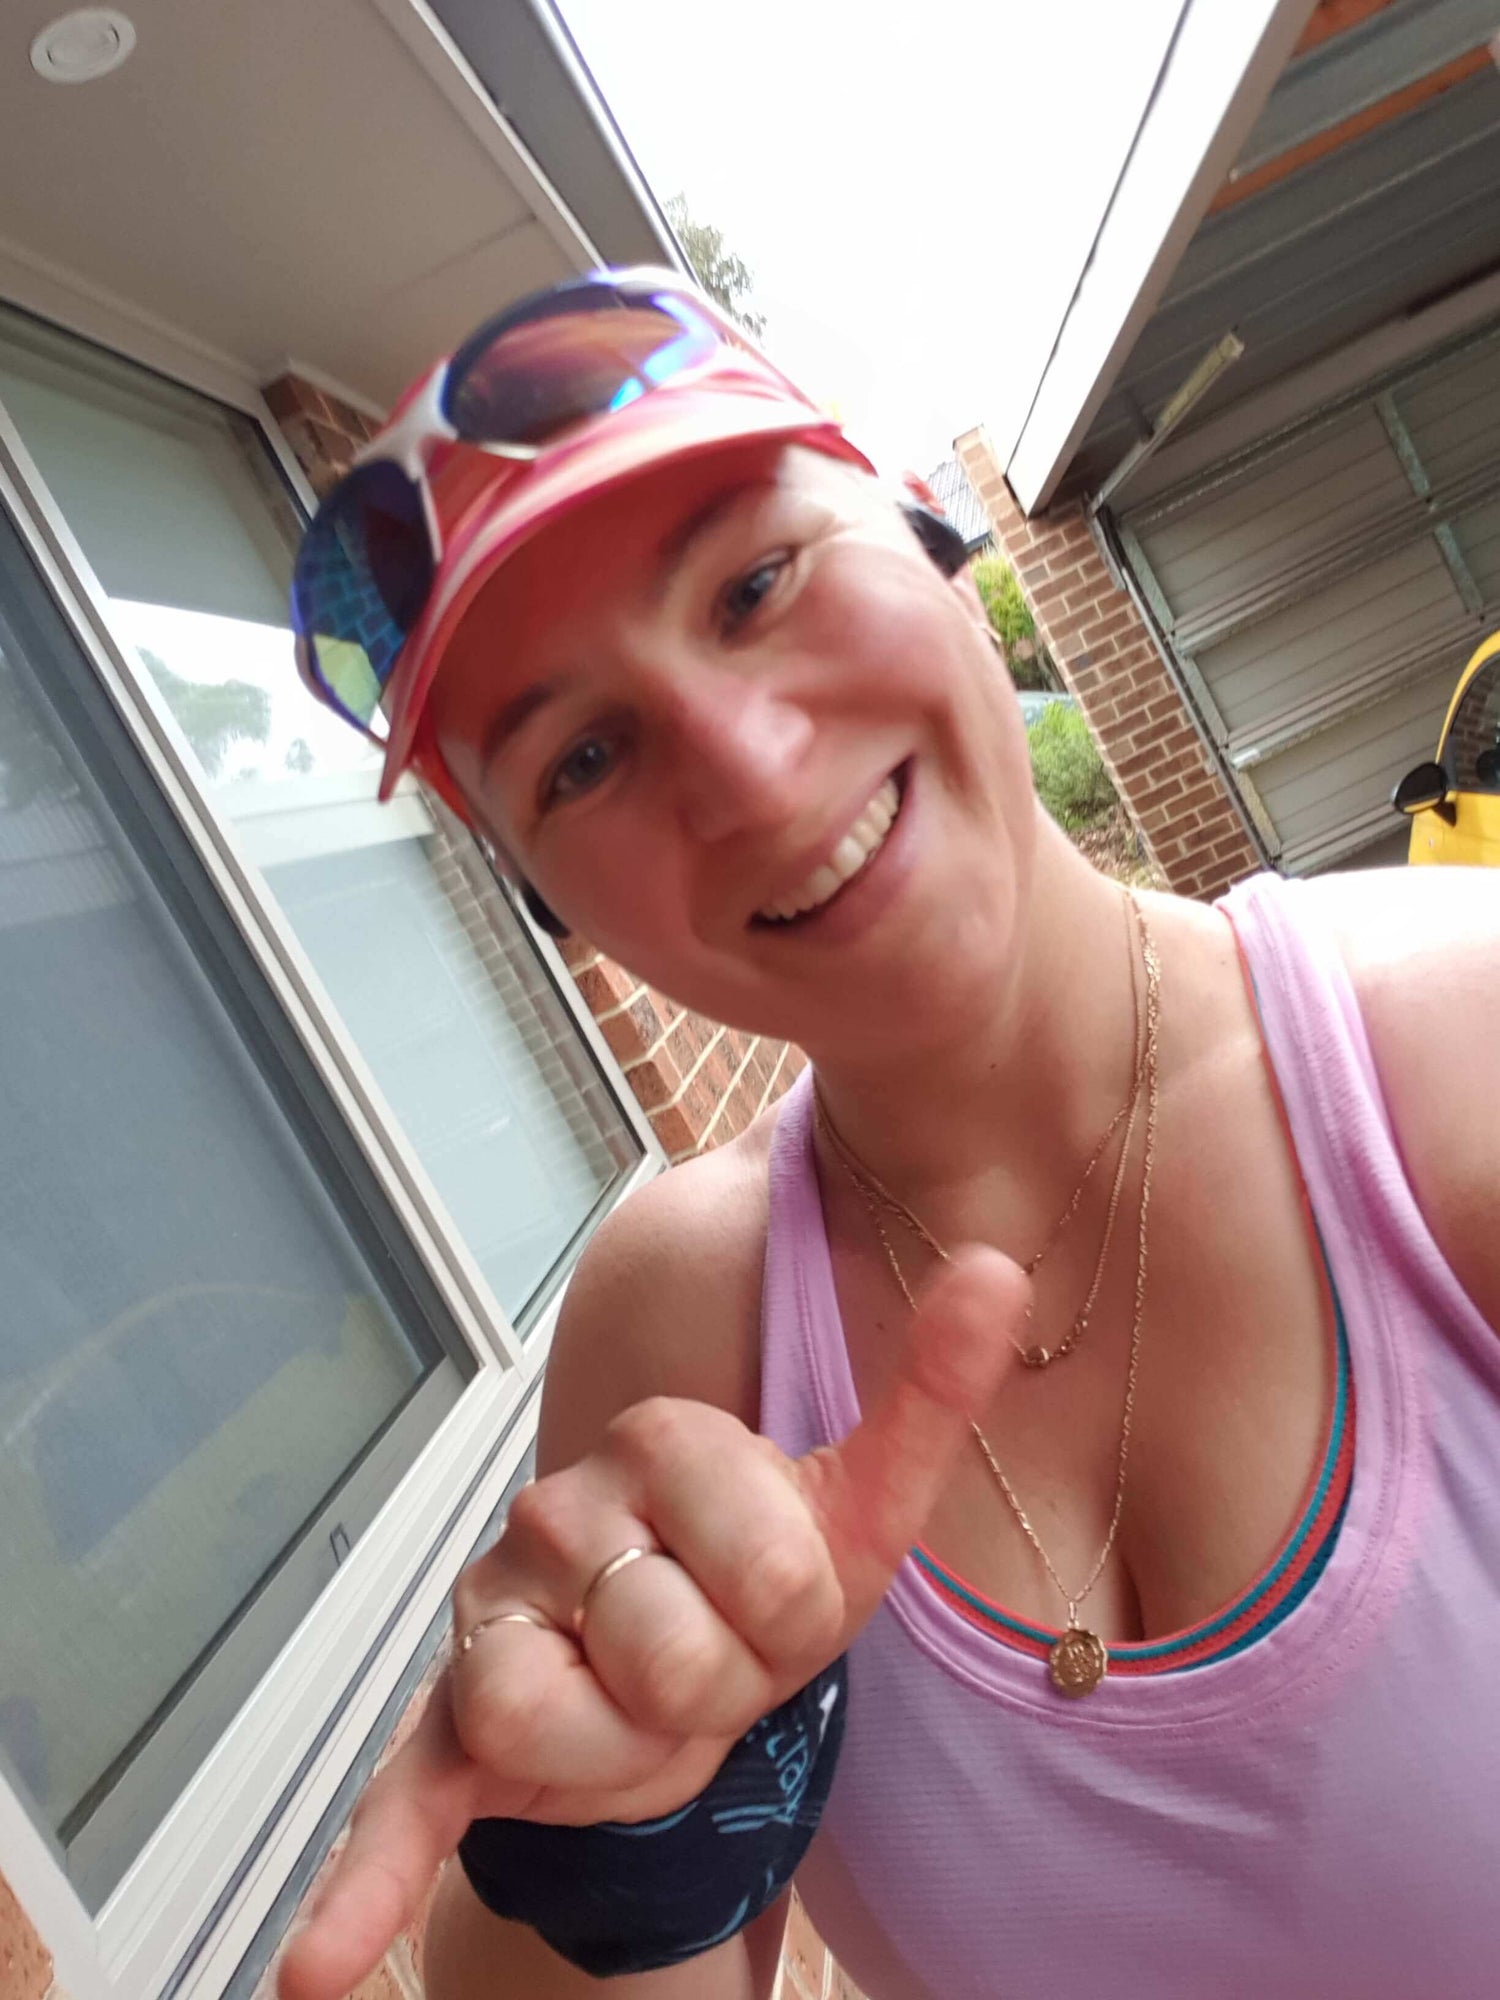 Visible Runner Co - Proviz Running Australia - Running Blog